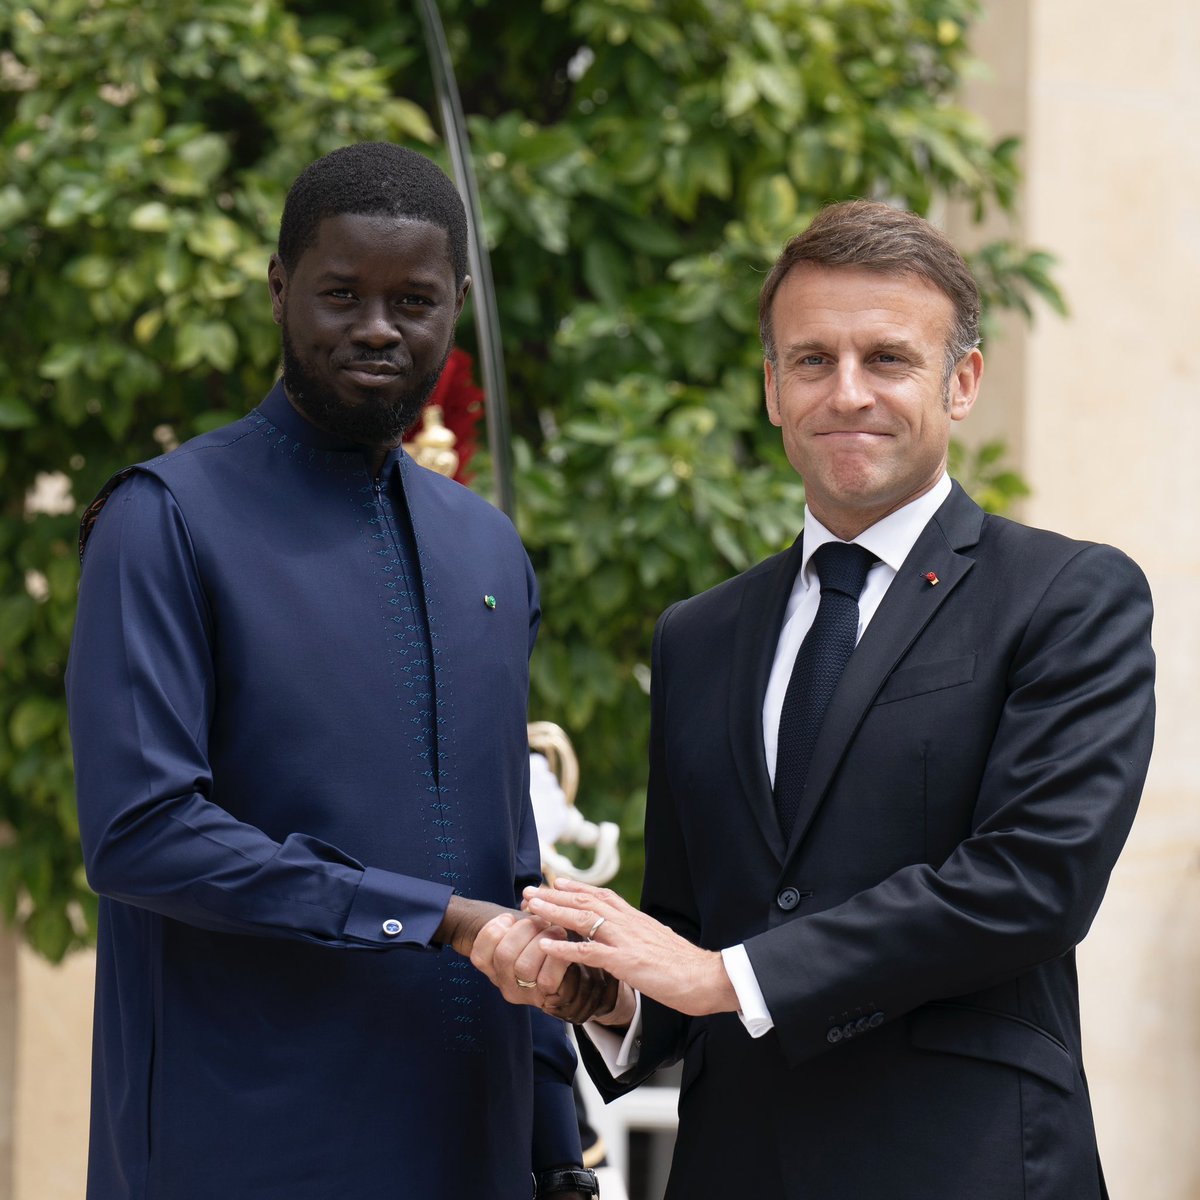 Bienvenue à Paris, Président @PR_Diomaye. Après notre première rencontre, j’en suis convaincu : nous allons donner une nouvelle impulsion au partenariat entre le Sénégal et la France, unis par des valeurs démocratiques communes et des liens humains indéfectibles.